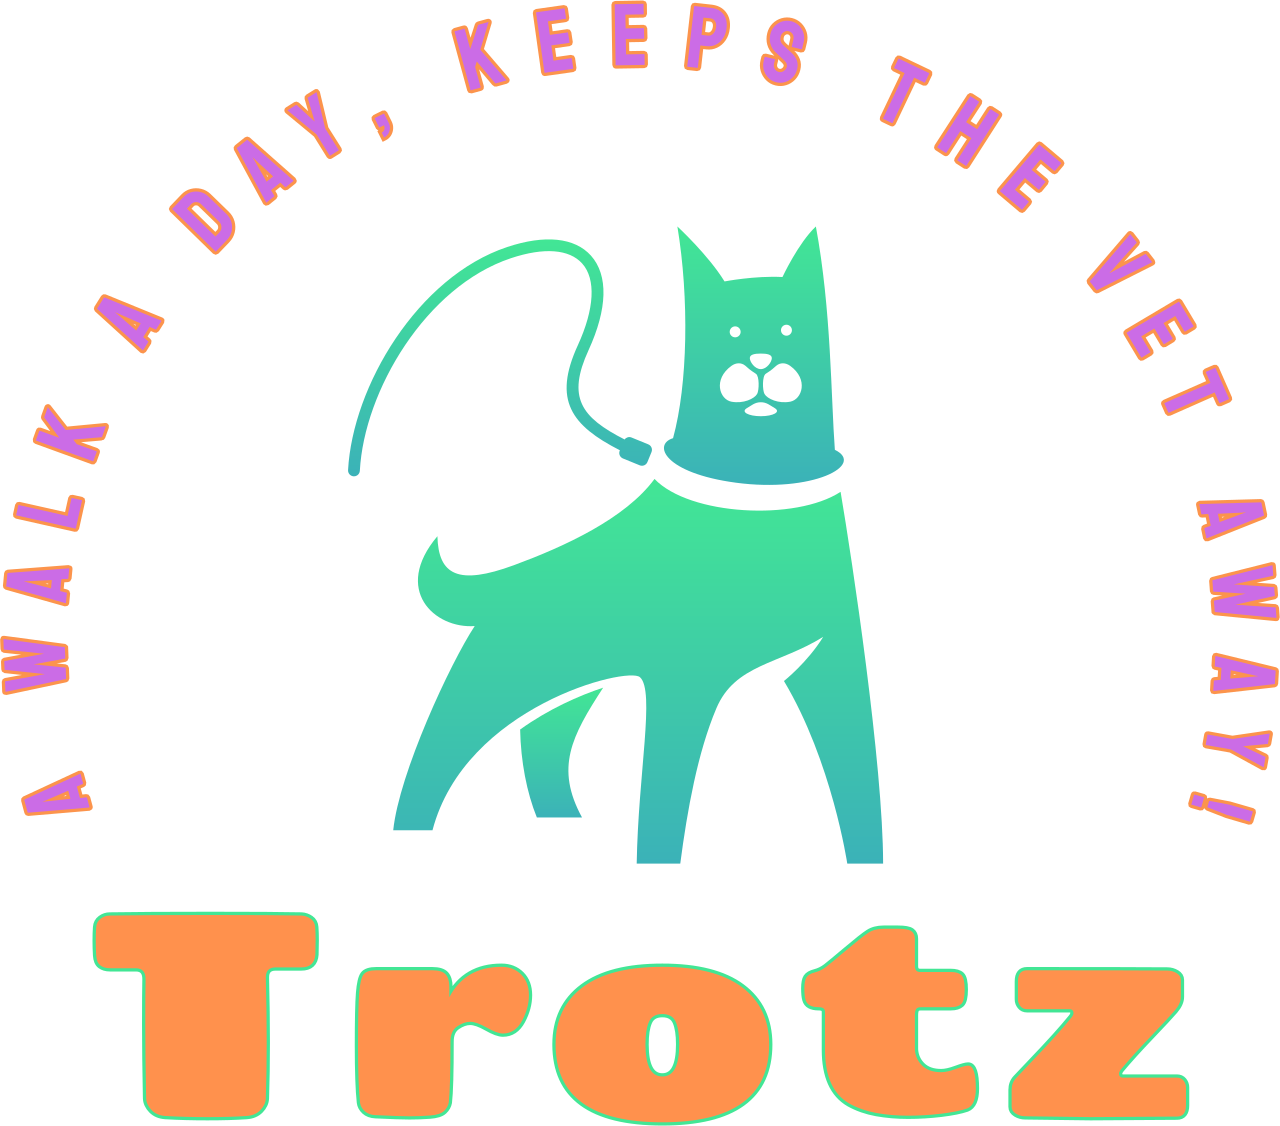 Trotz's logo